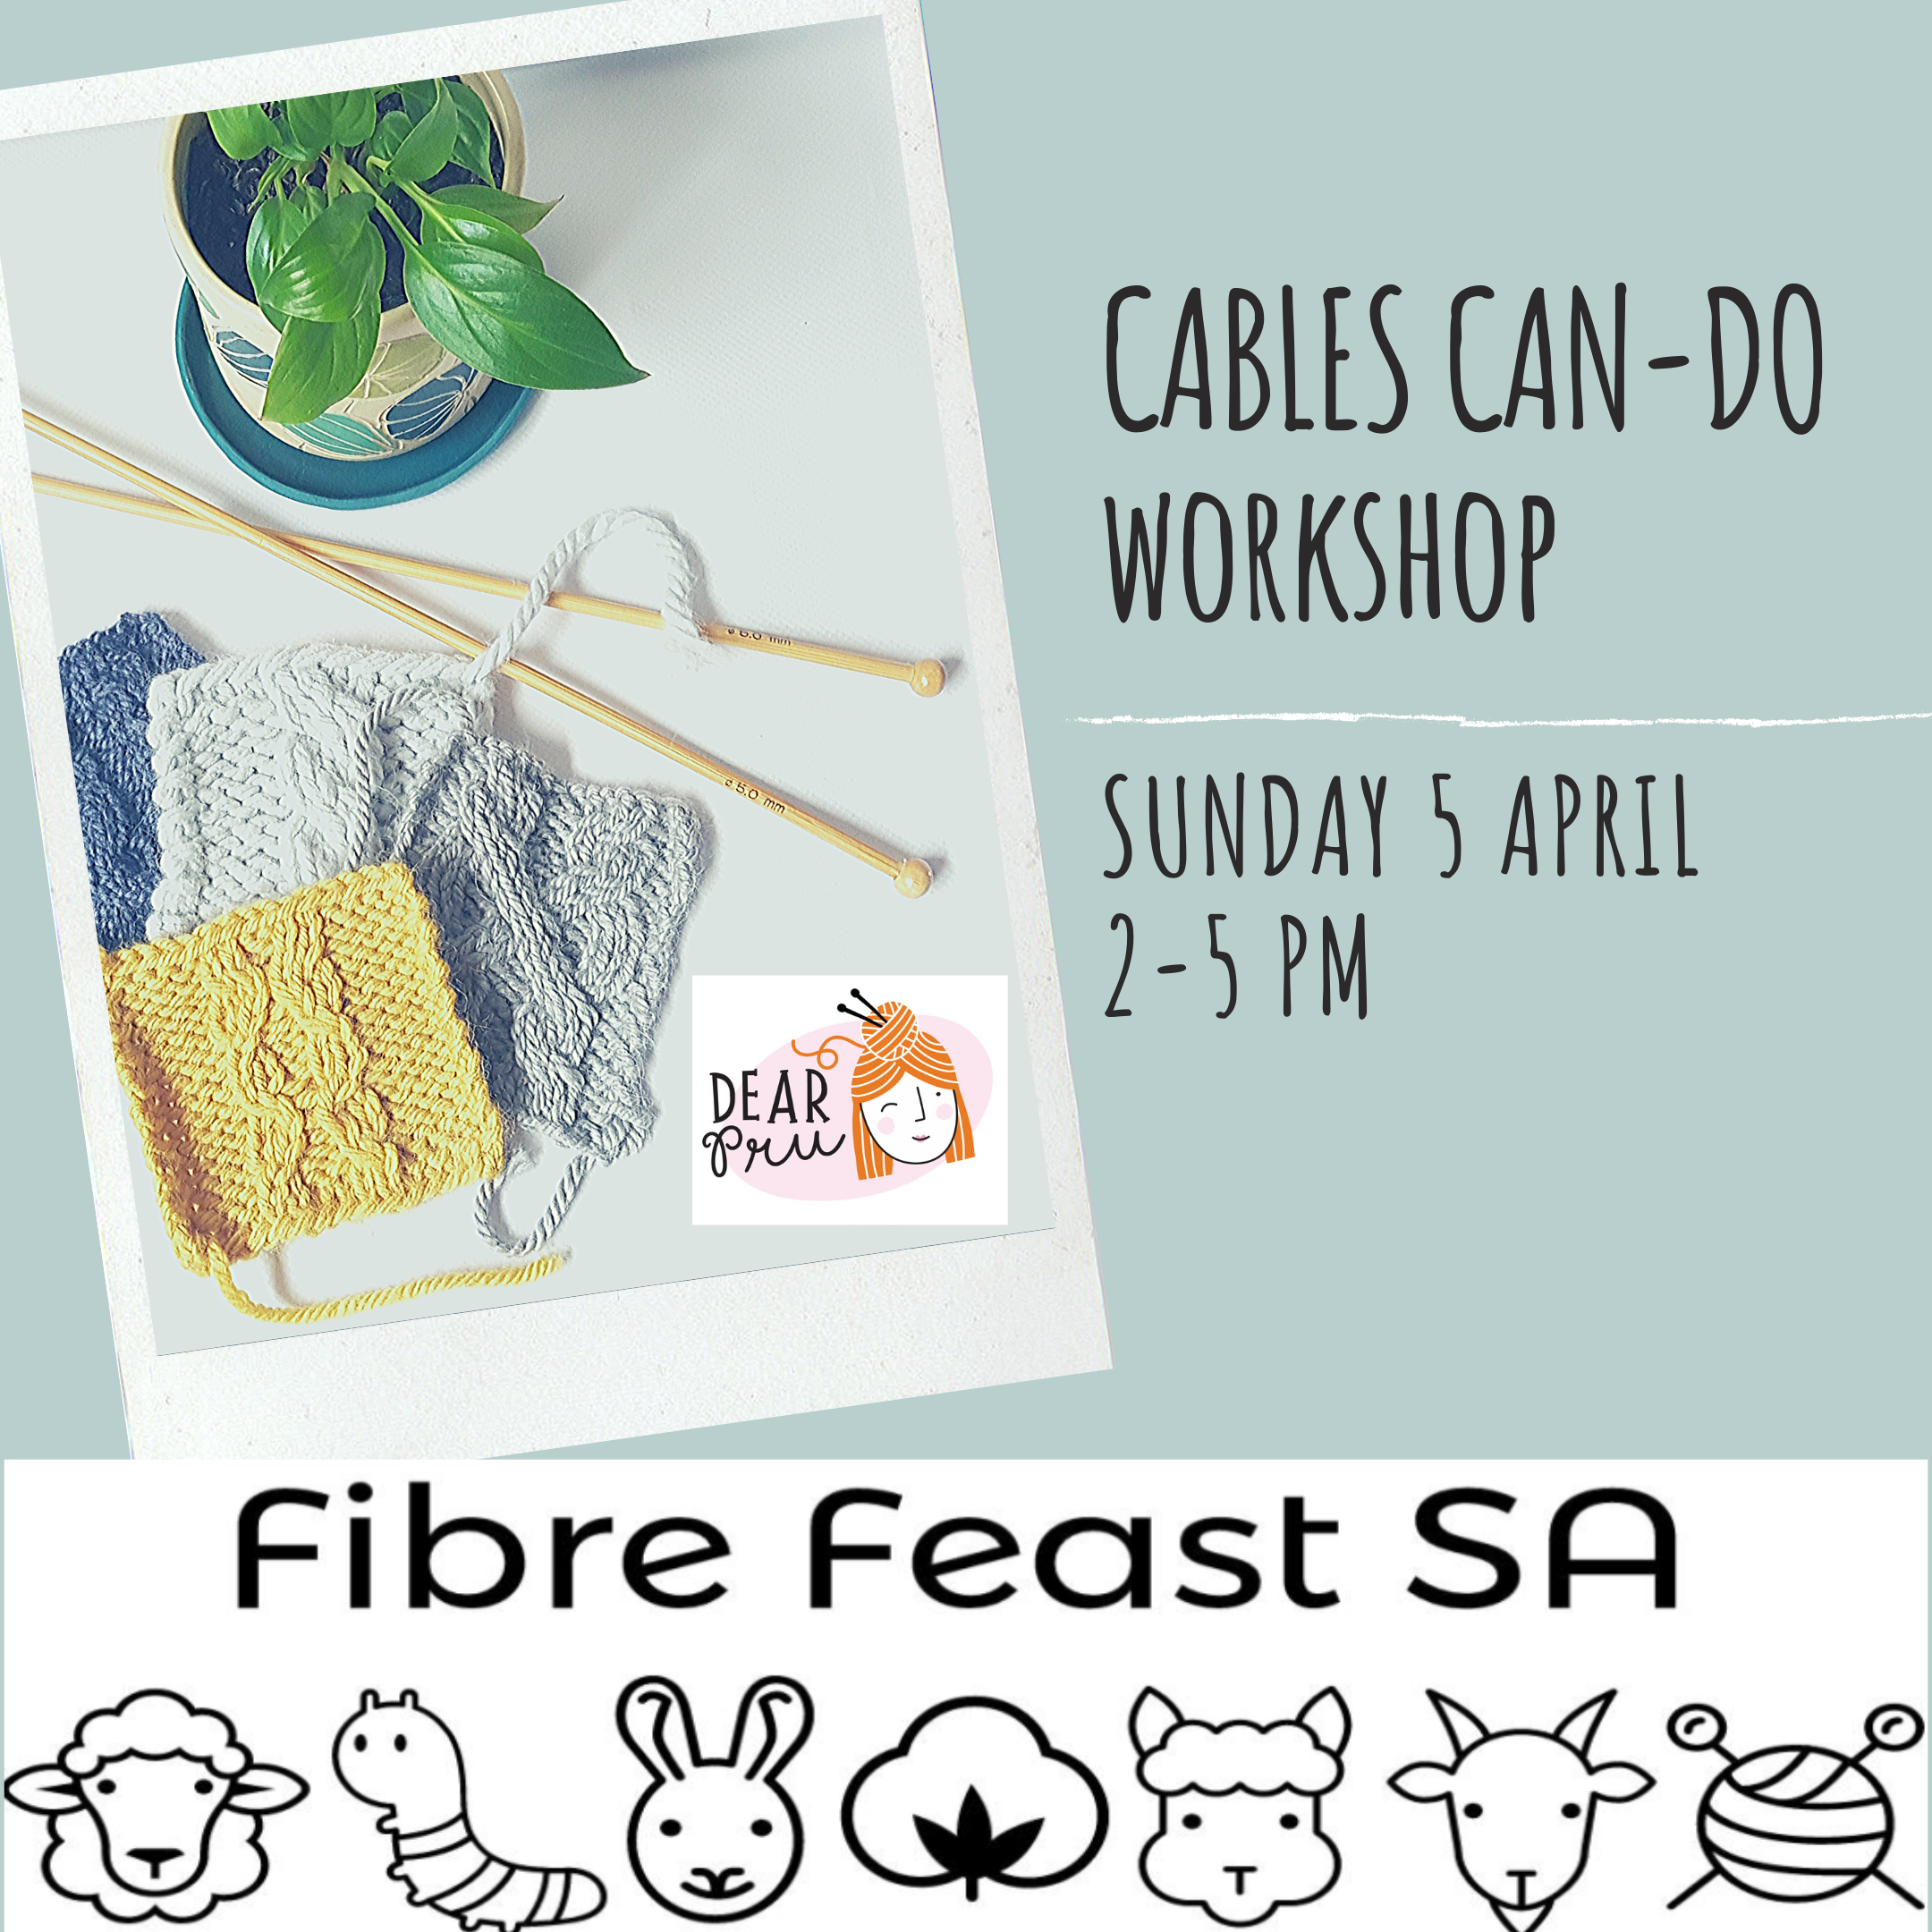 Cables - Can Do Workshop @ FibreFeastSA2020